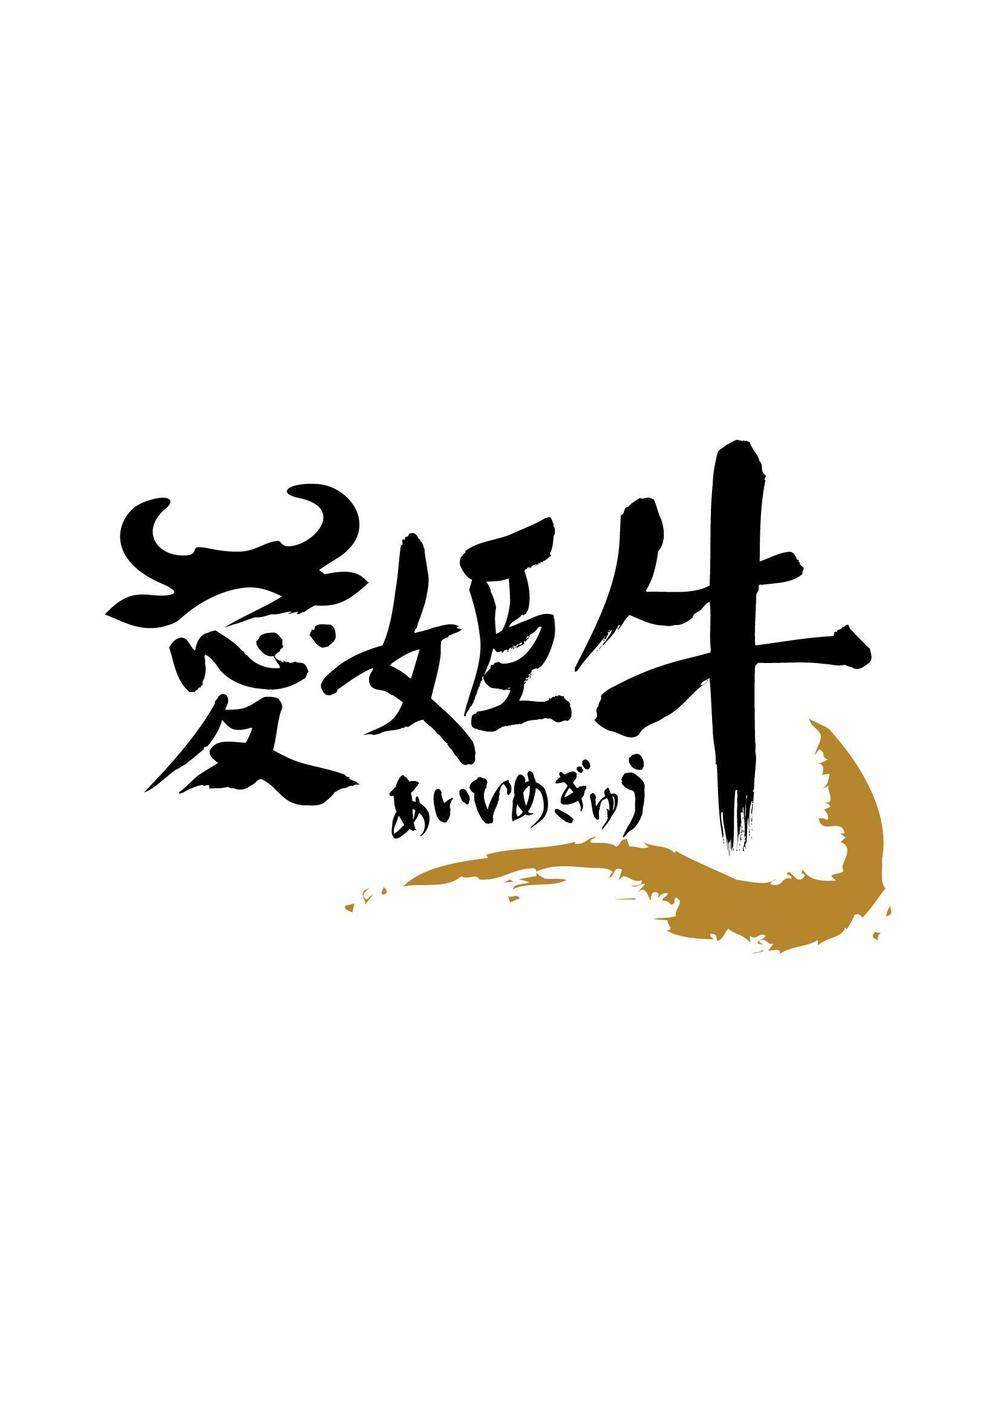 愛媛県産の牛肉ロゴ